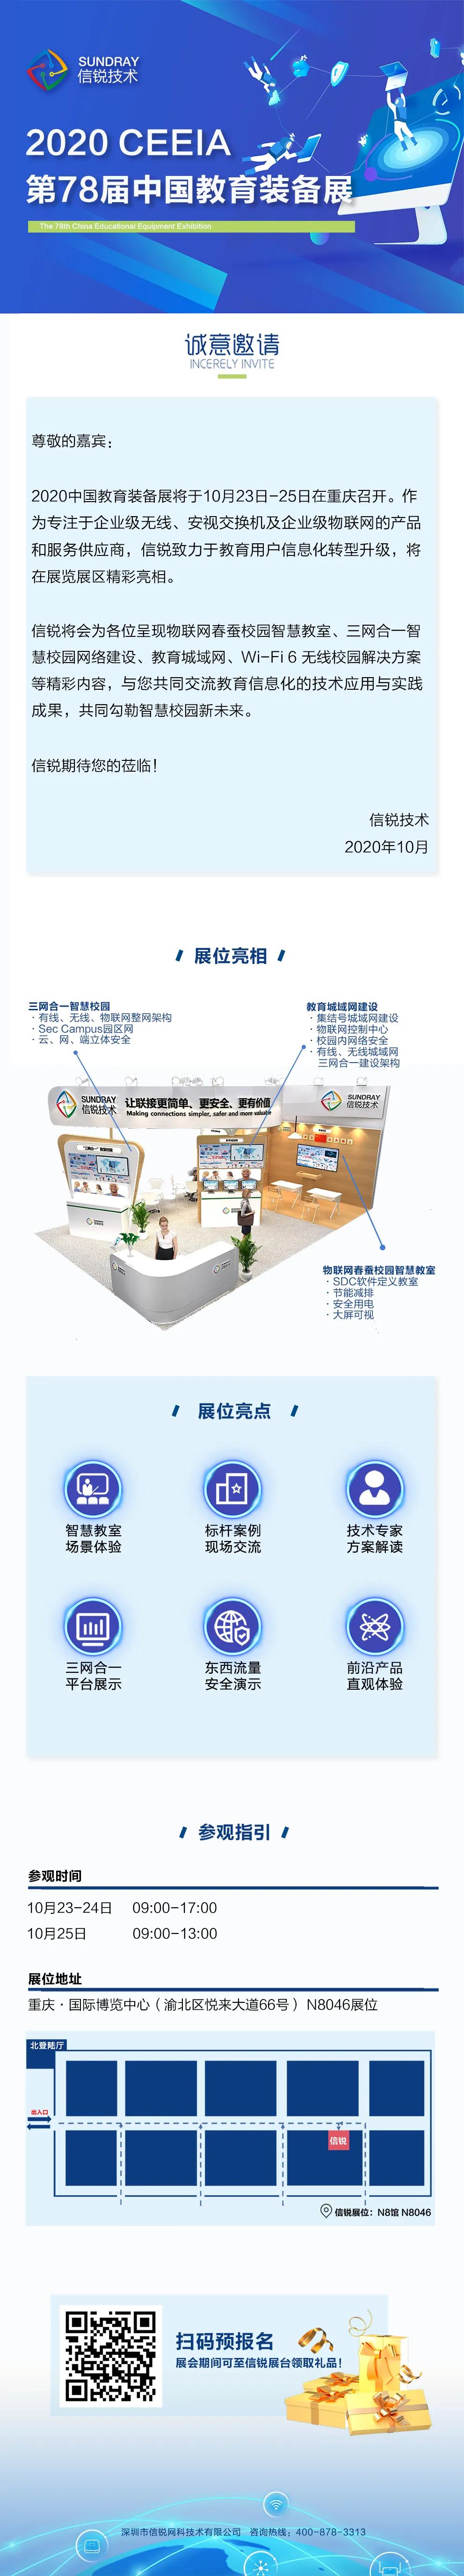 中国教育装备展示会.jpg